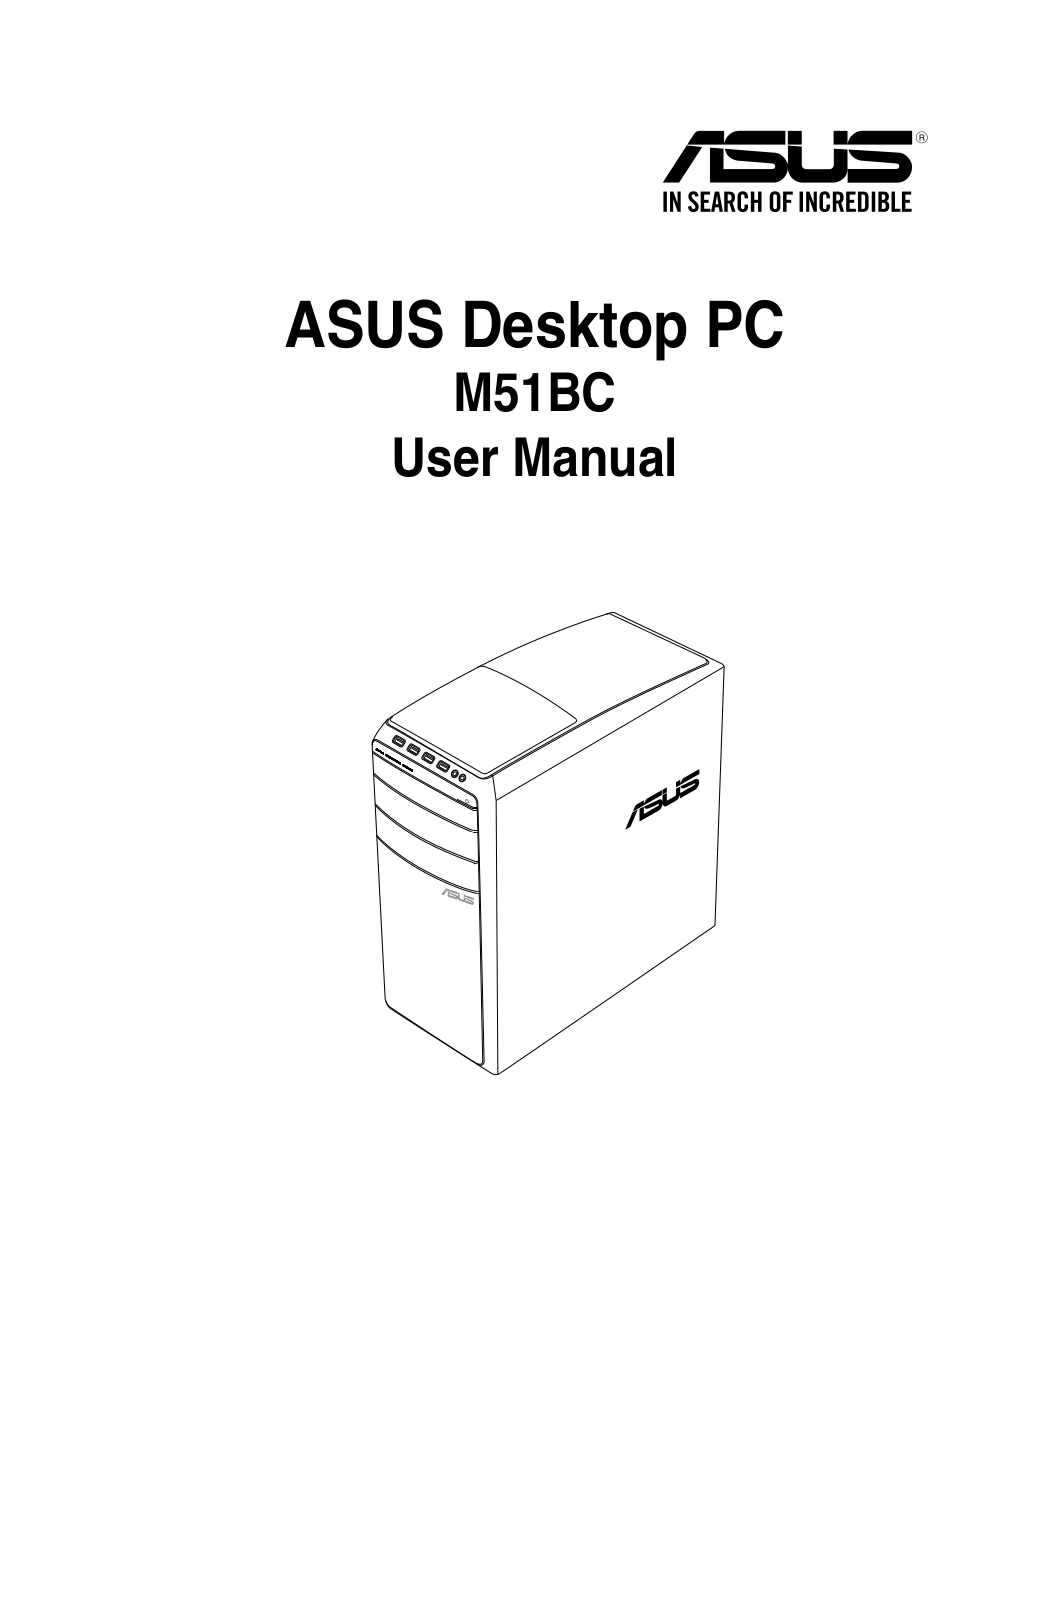 ASUS M51BCUS003S, M51BCUS004S User Manual